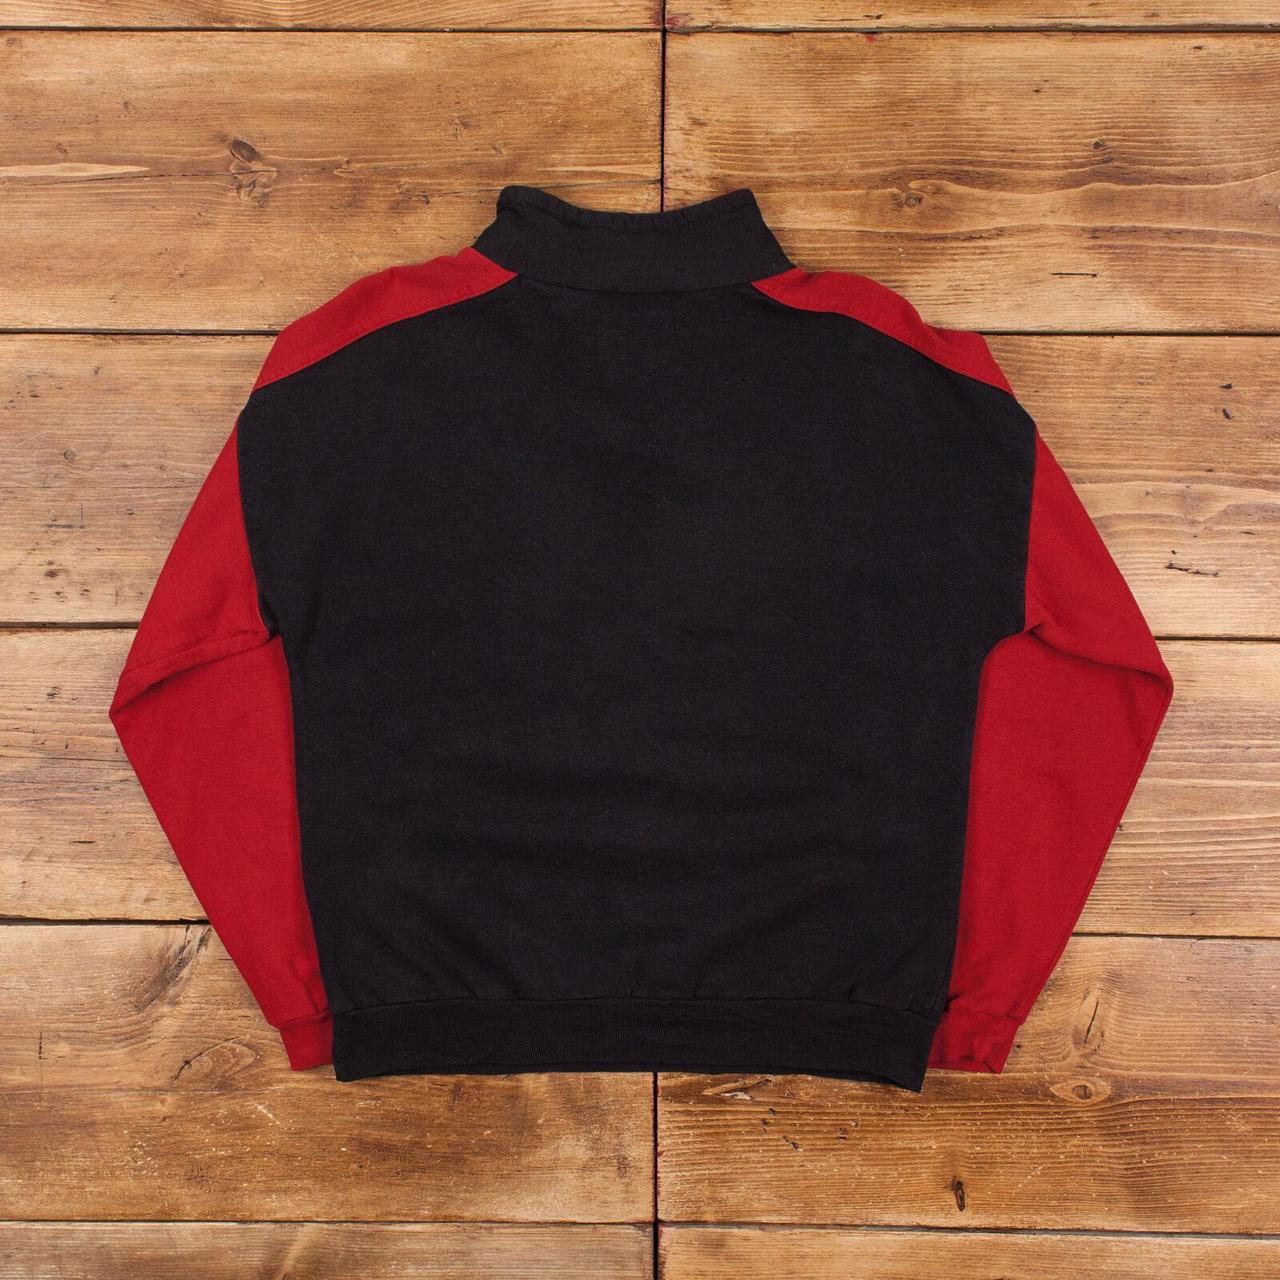 Product Image 2 - Vintage NBA Chicago Bulls Sweatshirt